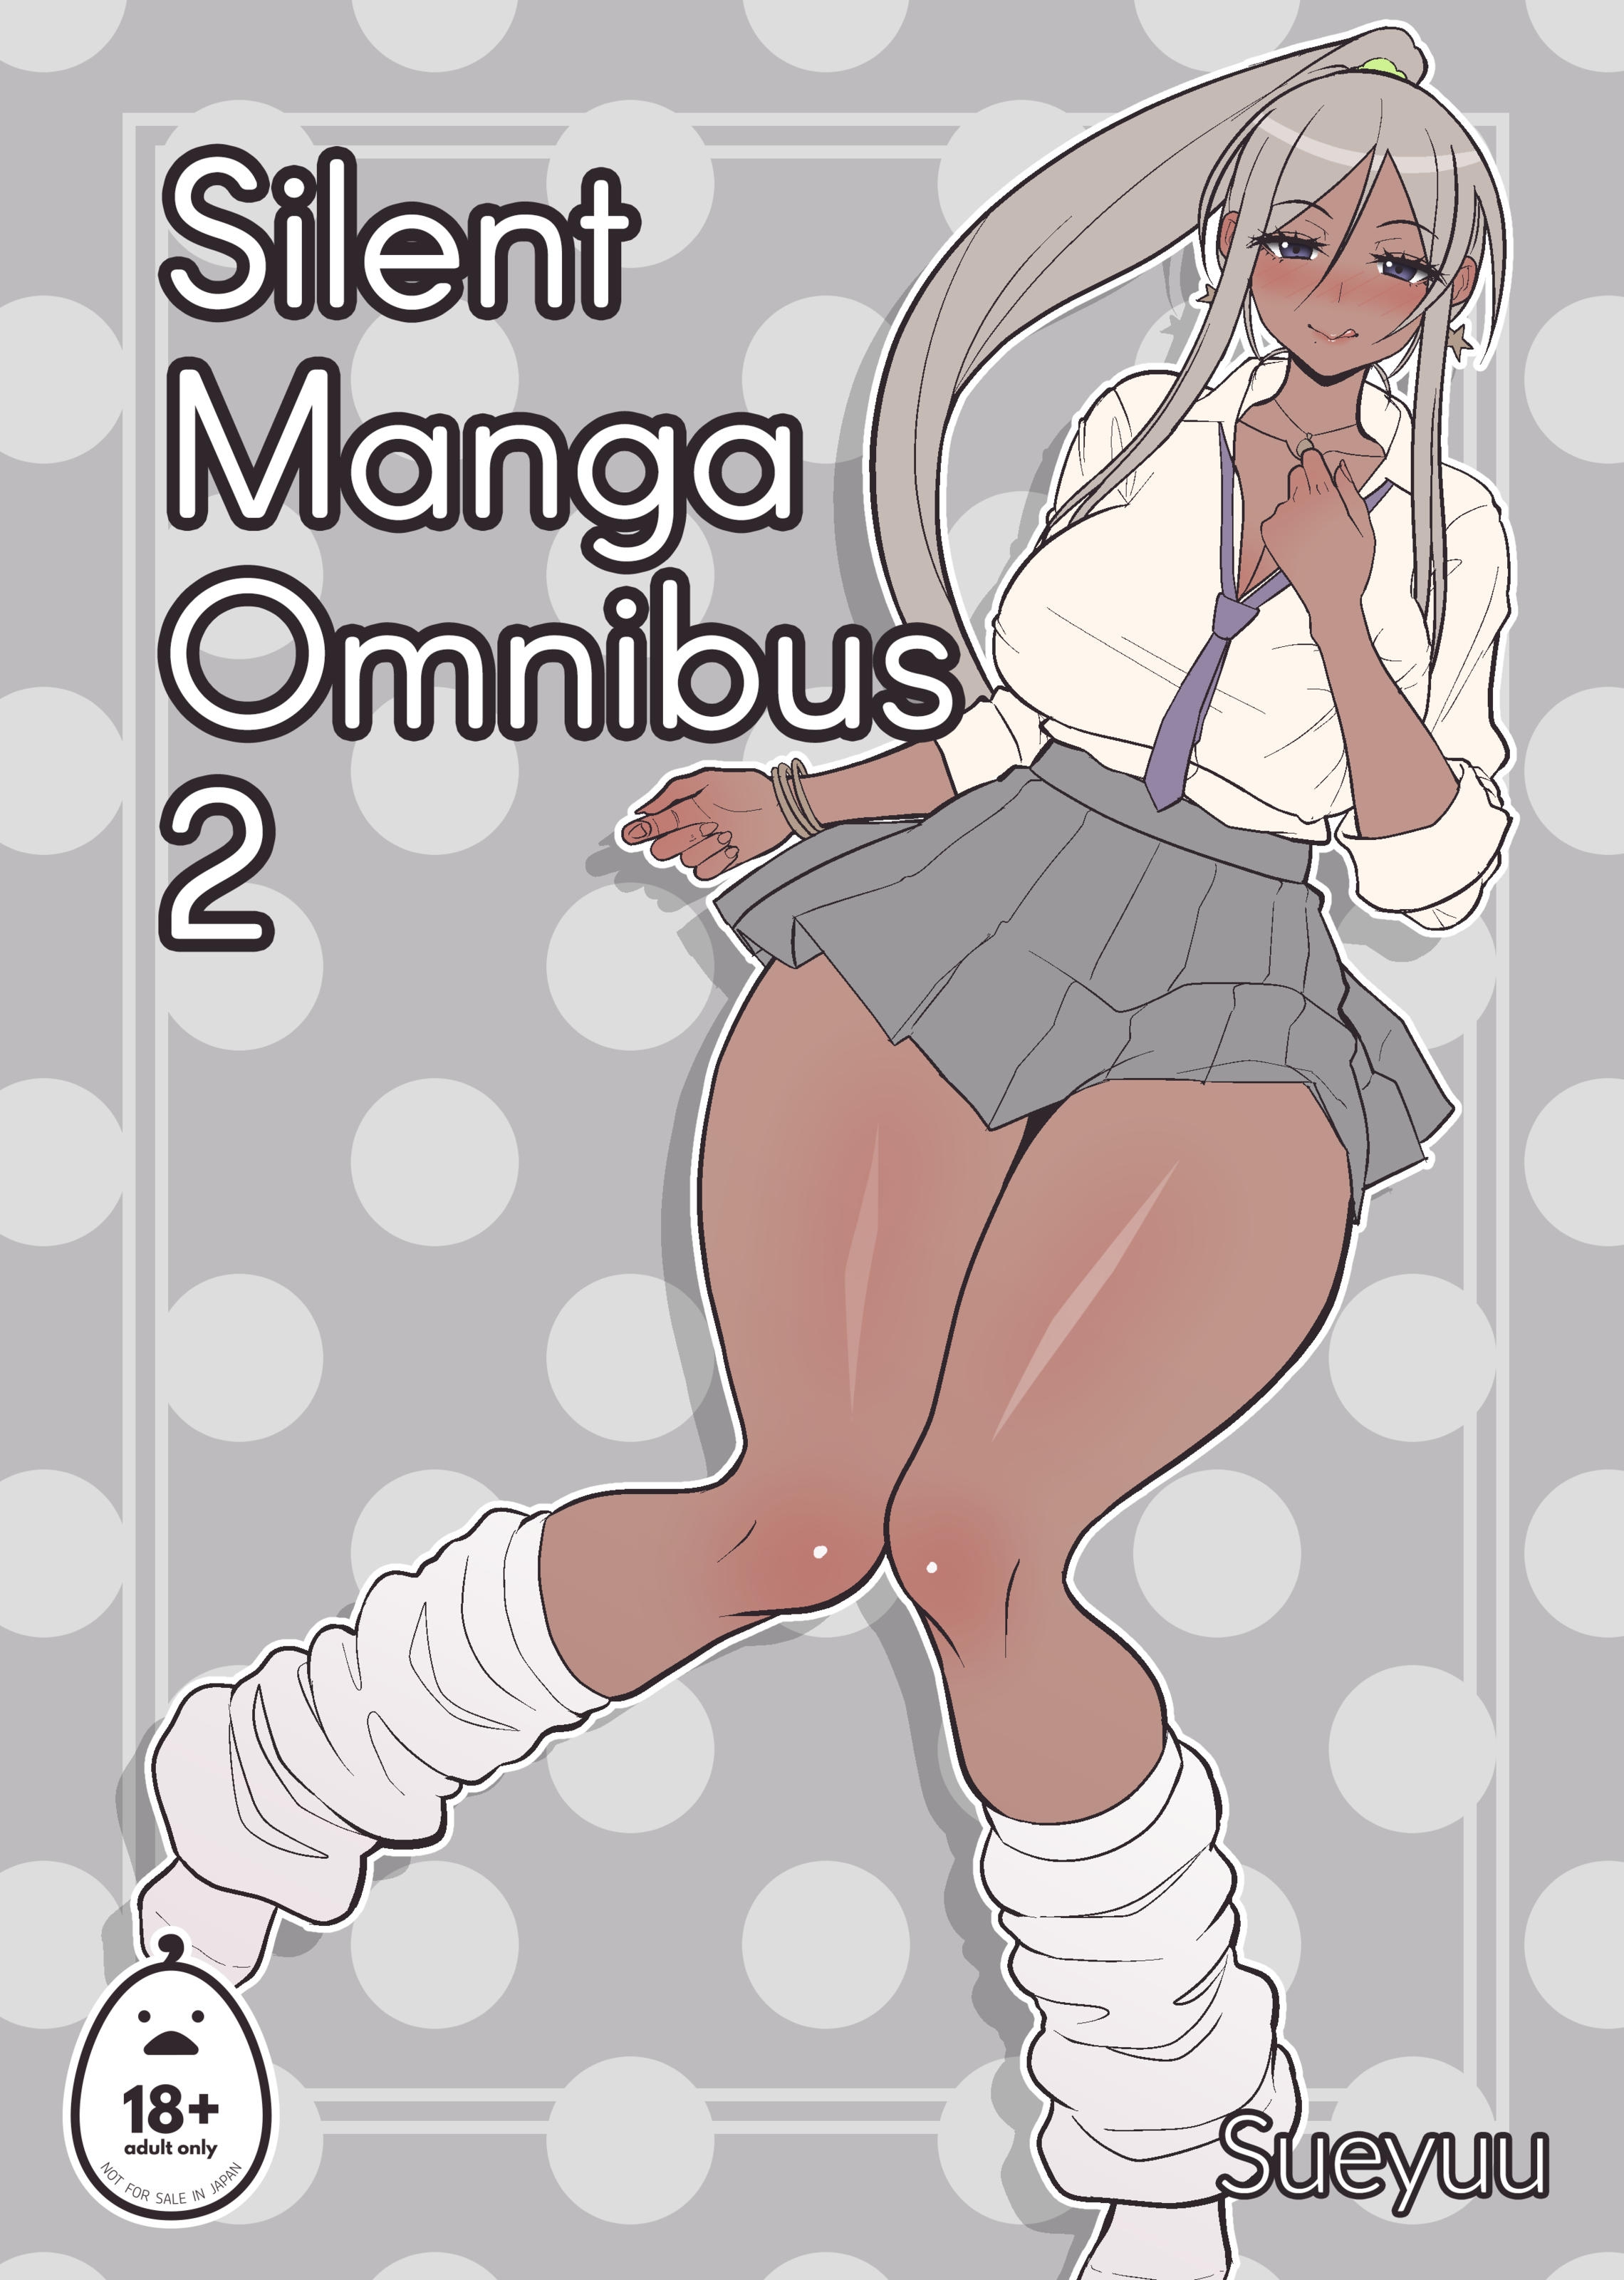 Silent omnibus manga